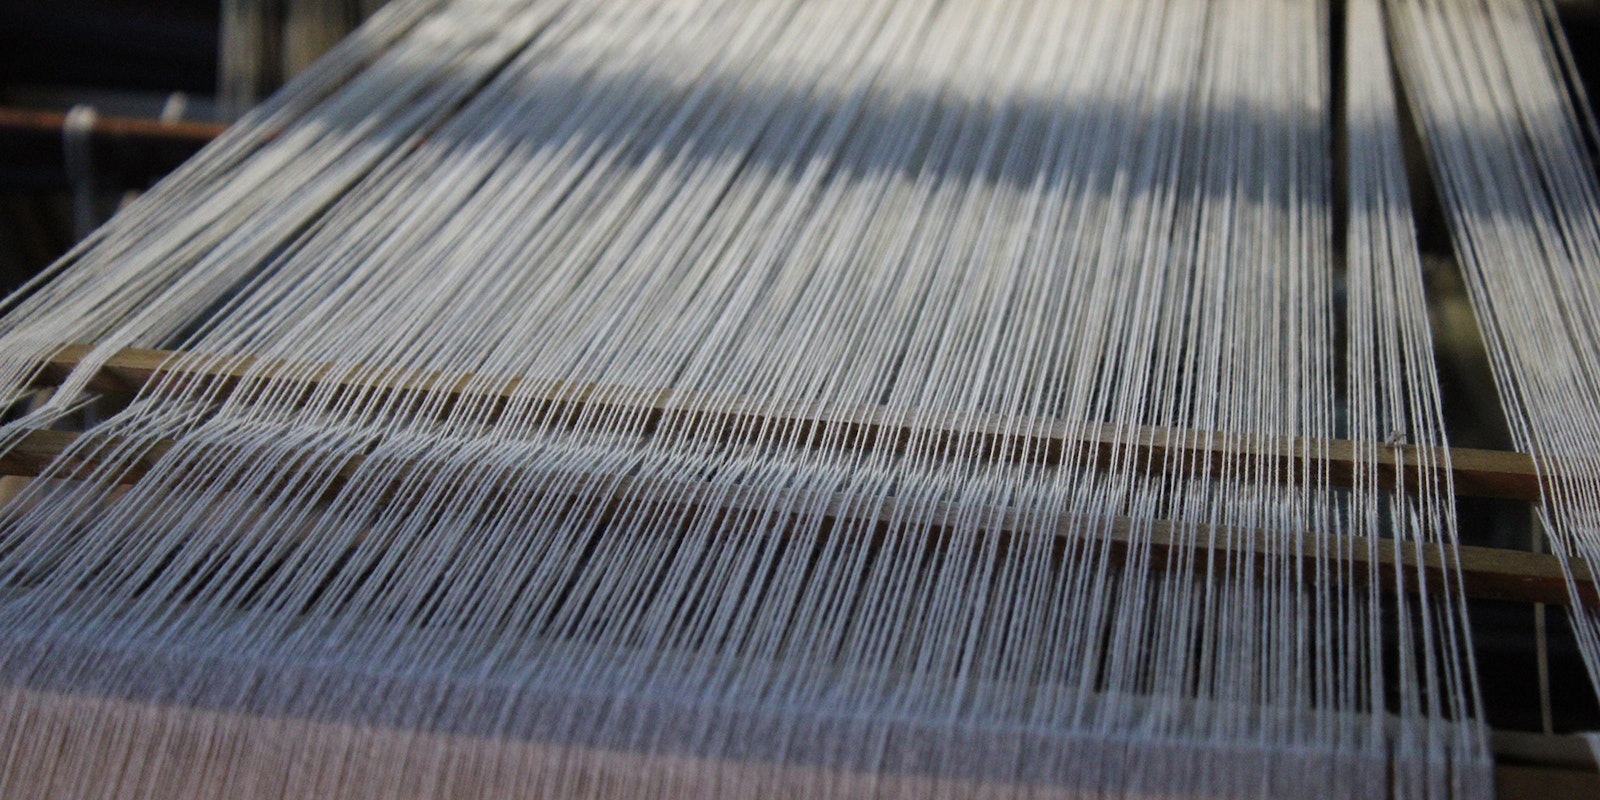 Weaving Tips, Loop Weave Video (Pile Weave), The Weaving Loom